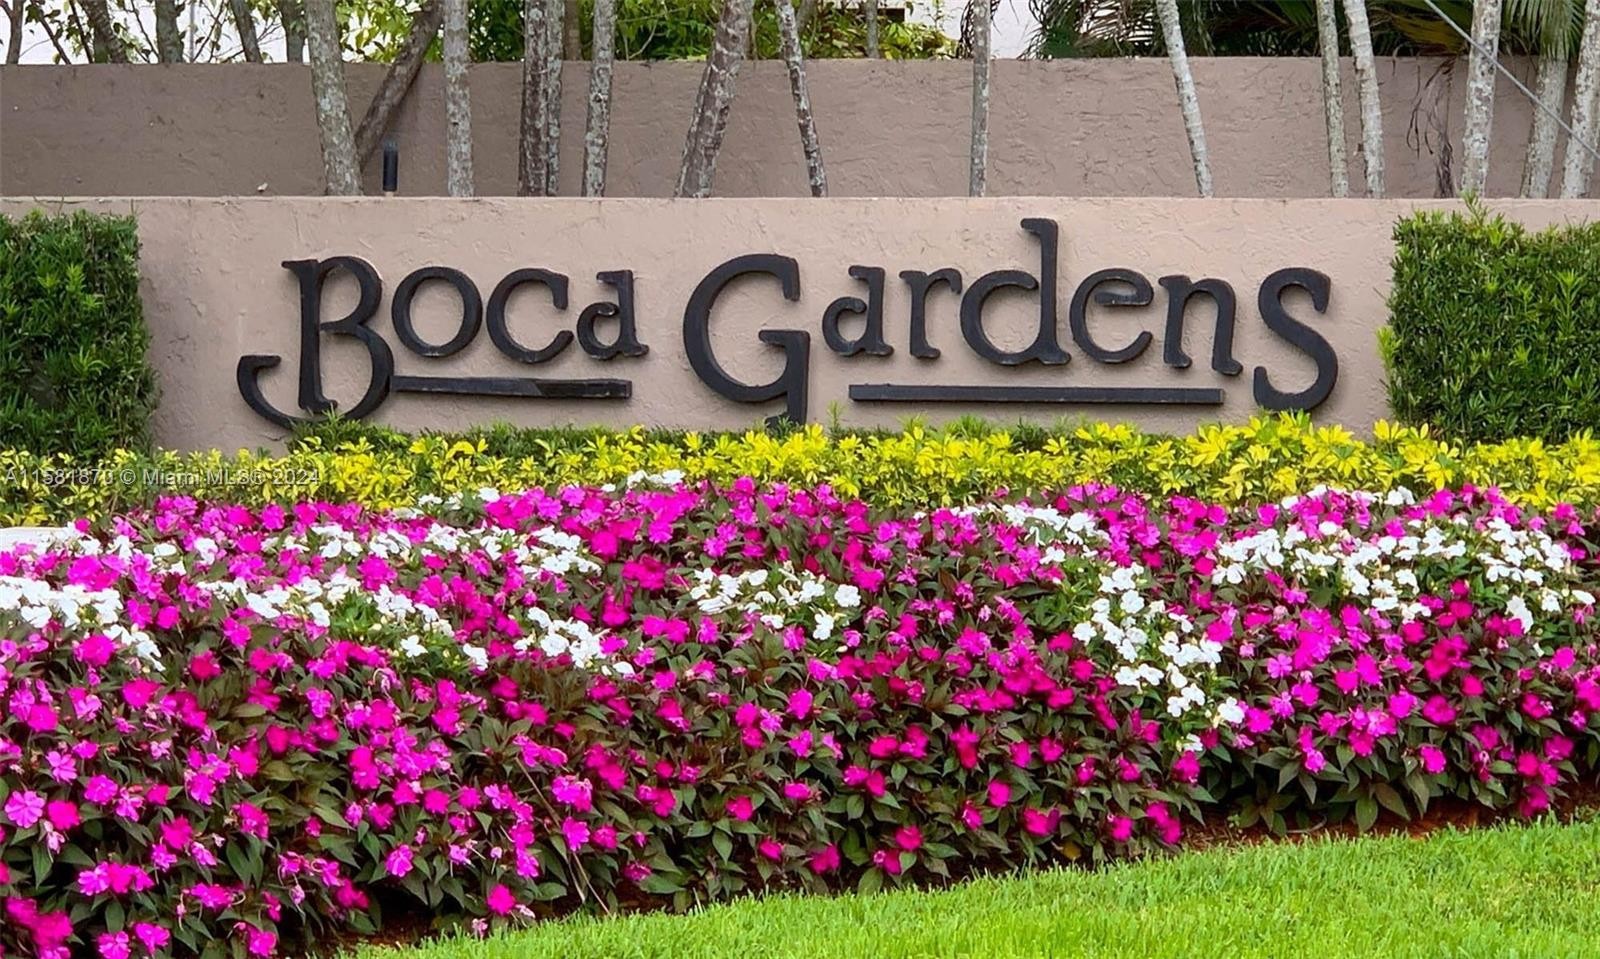 1. 9399 S Boca Gardens Cir S